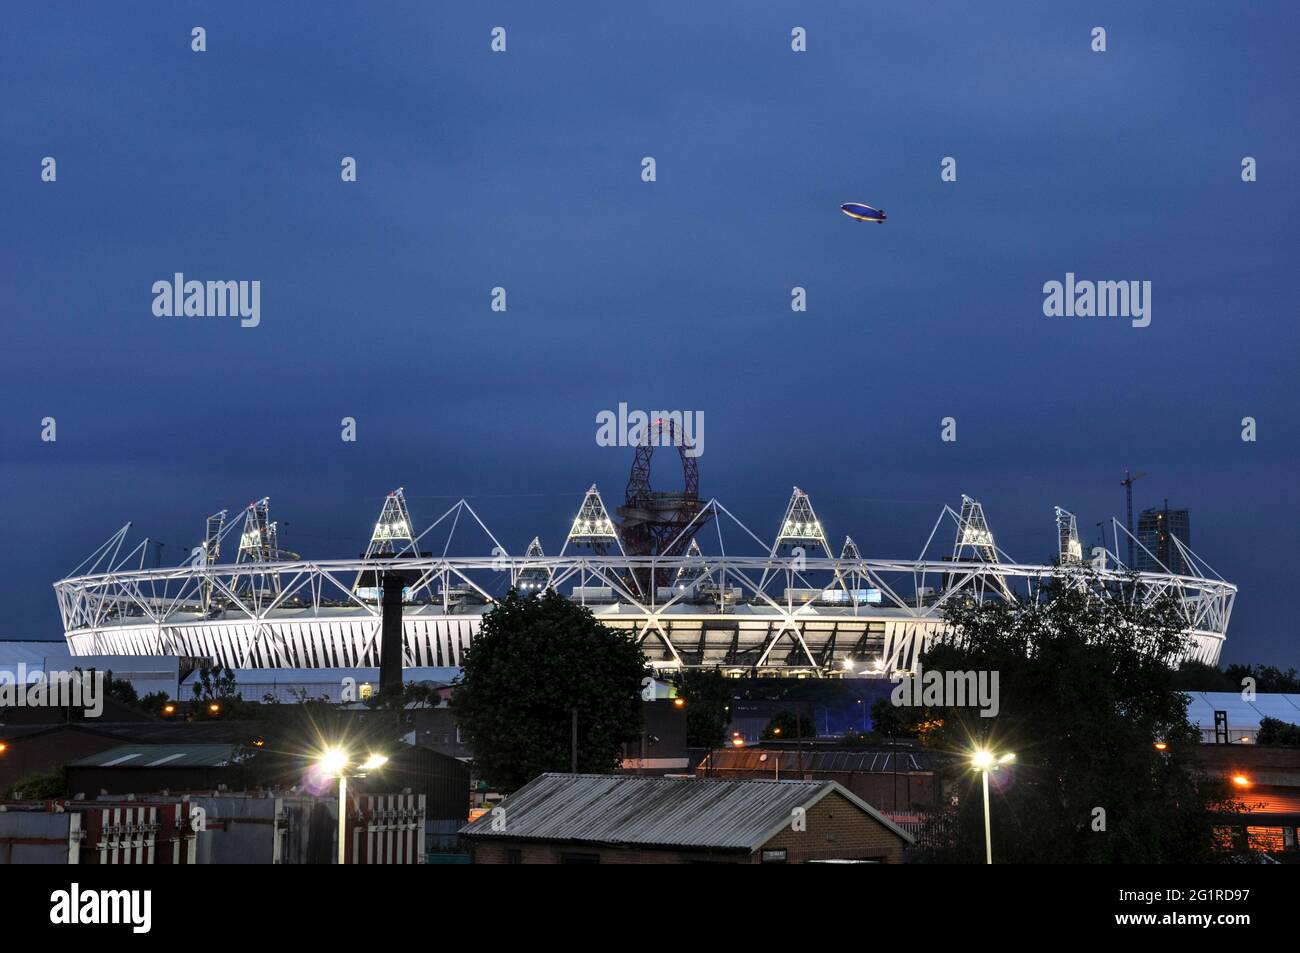 Goodyear Blimp filmant à la télévision au-dessus du stade olympique pour la cérémonie d'ouverture des Jeux Olympiques de Londres 2012. Jeux d'été nouveau stade Banque D'Images